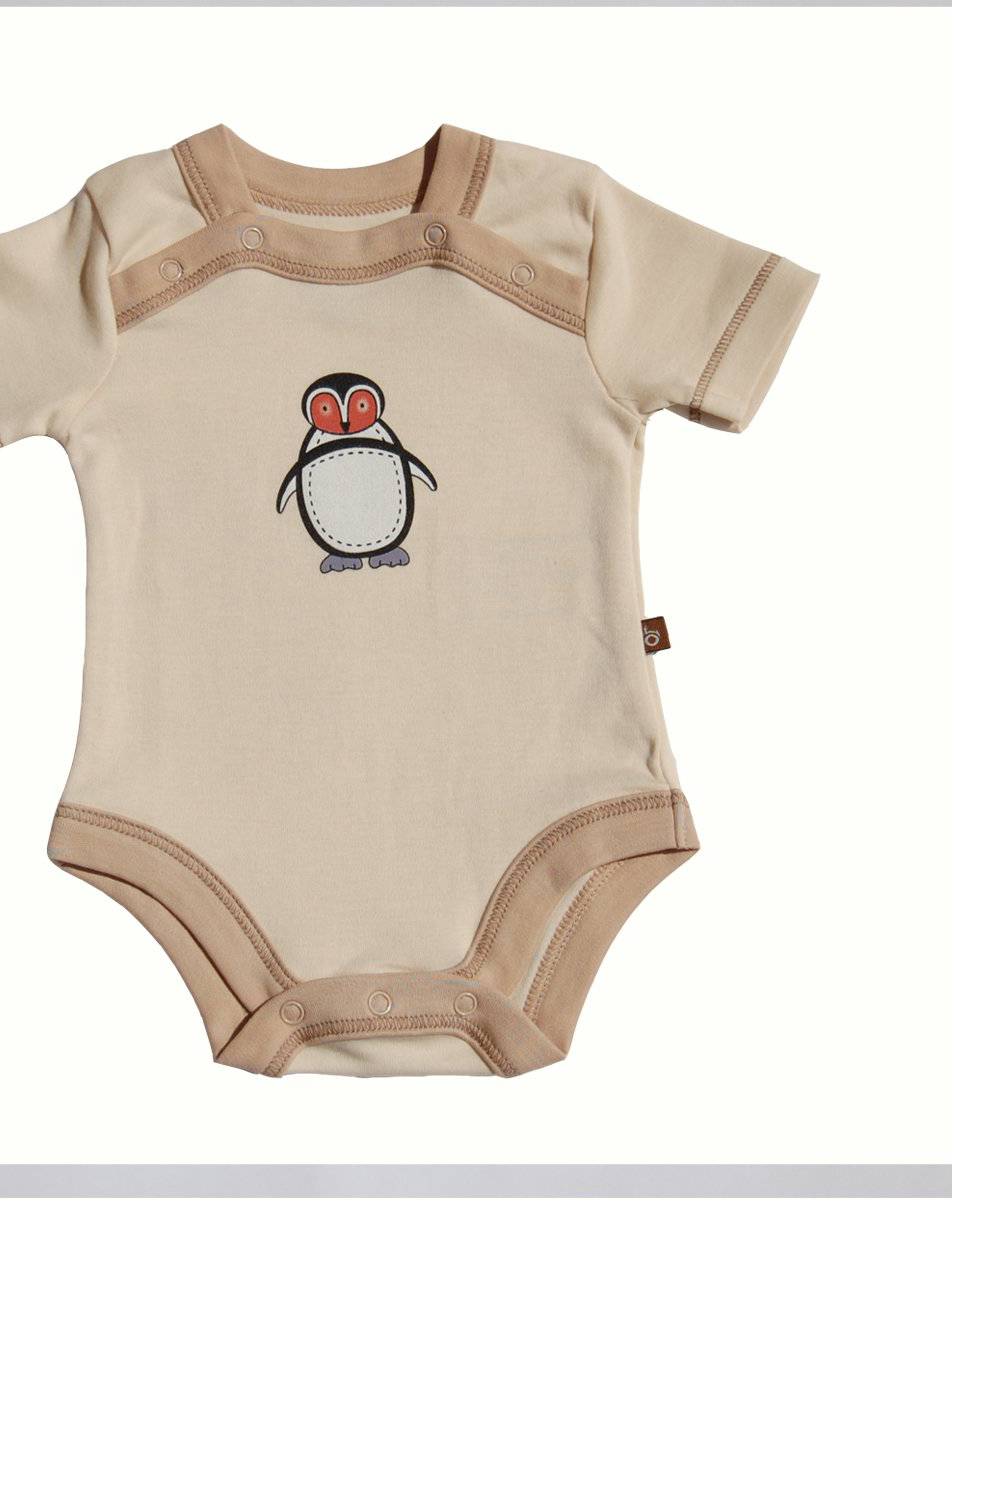 BABYCAMPOO - Body Bebé Algodón Pima Orgánico Pola Pingüino